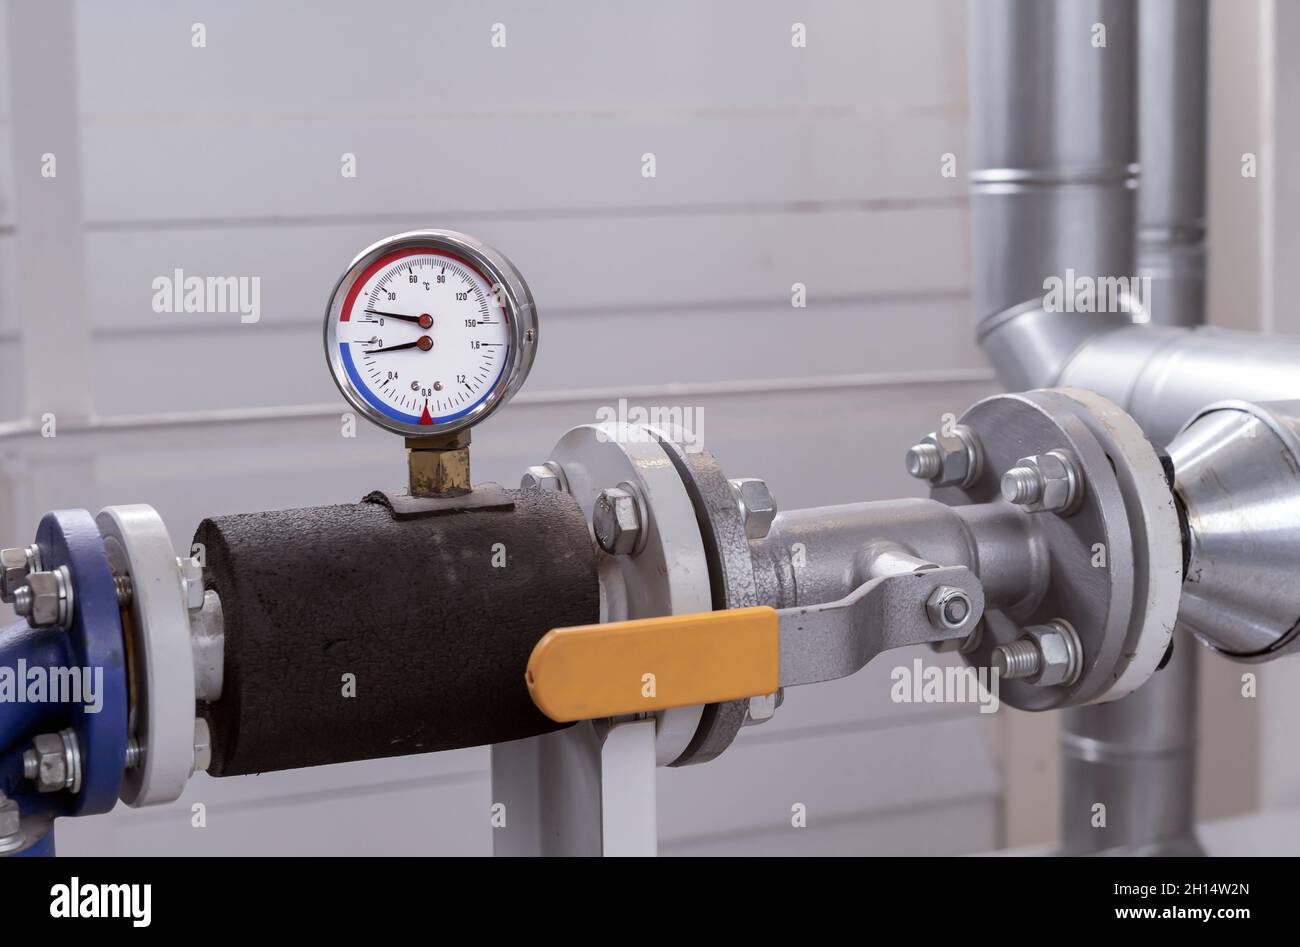 Manomètre et thermomètre pour mesurer la température et la pression de l'eau  dans le système de plomberie d'une chaufferie à gaz Photo Stock - Alamy